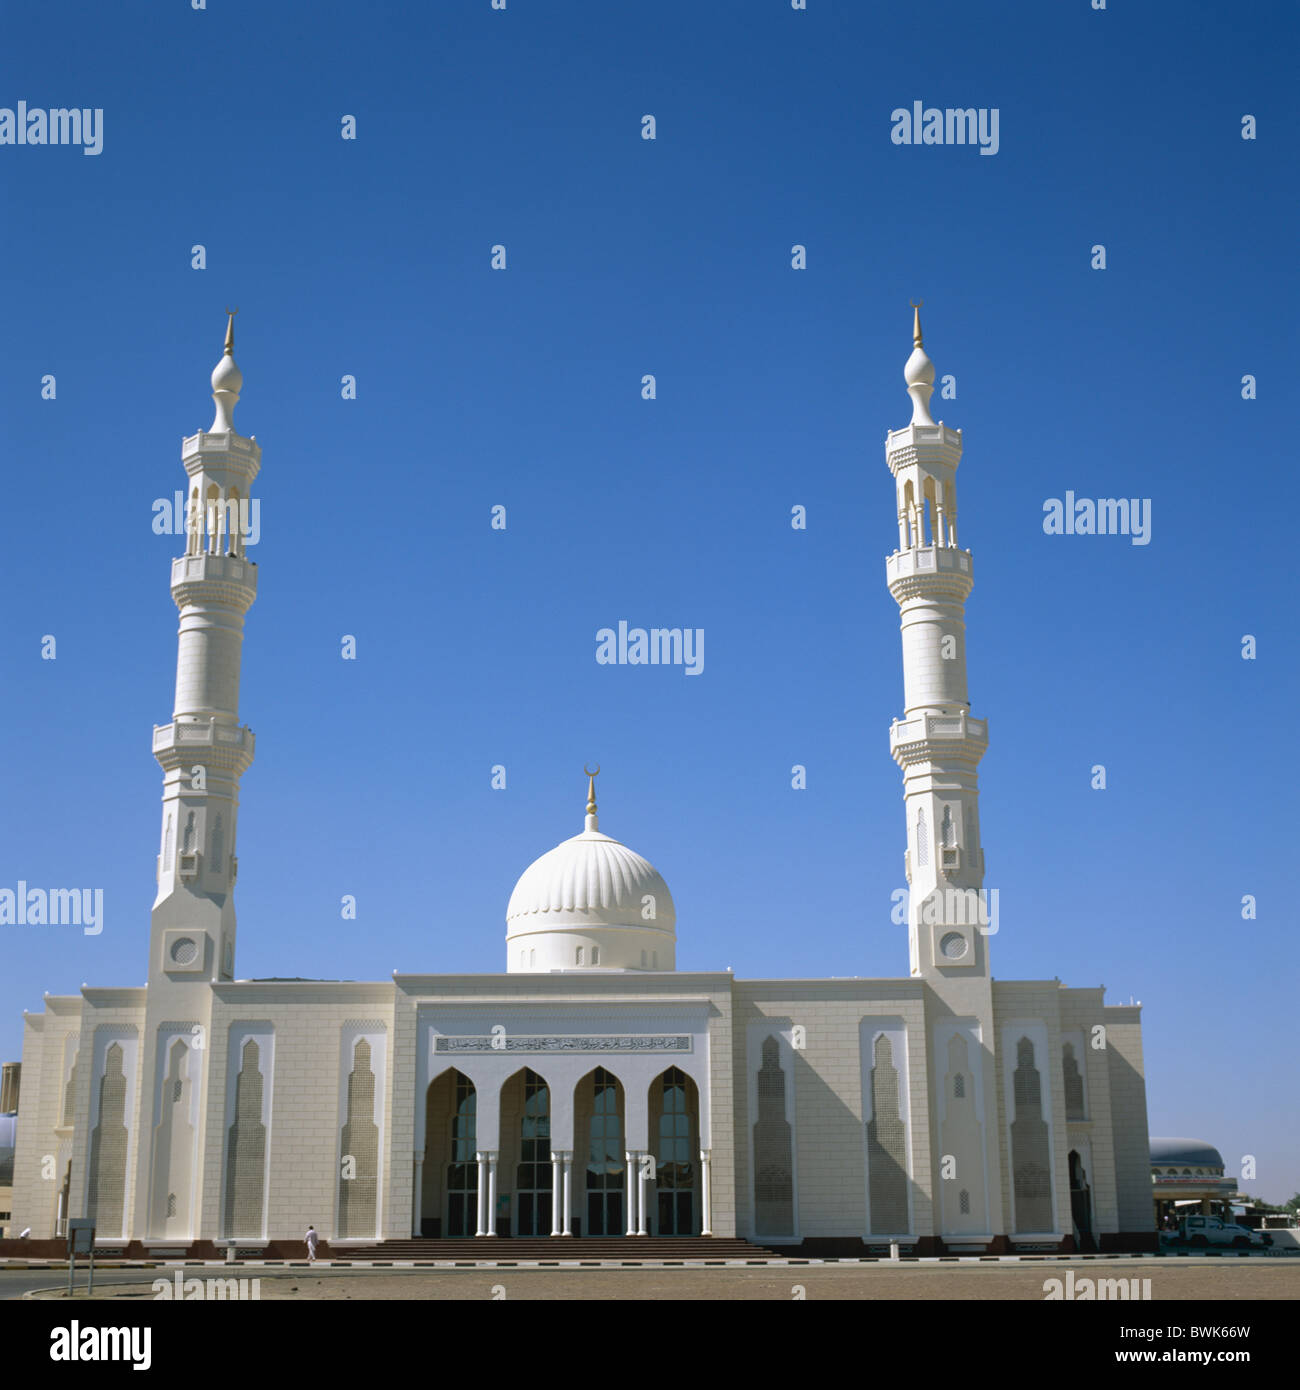 Mosquée Al Dhaid émirat Schardscha Dubai Emirats Arabes Unis Asie Moyen Orient islam religion Banque D'Images